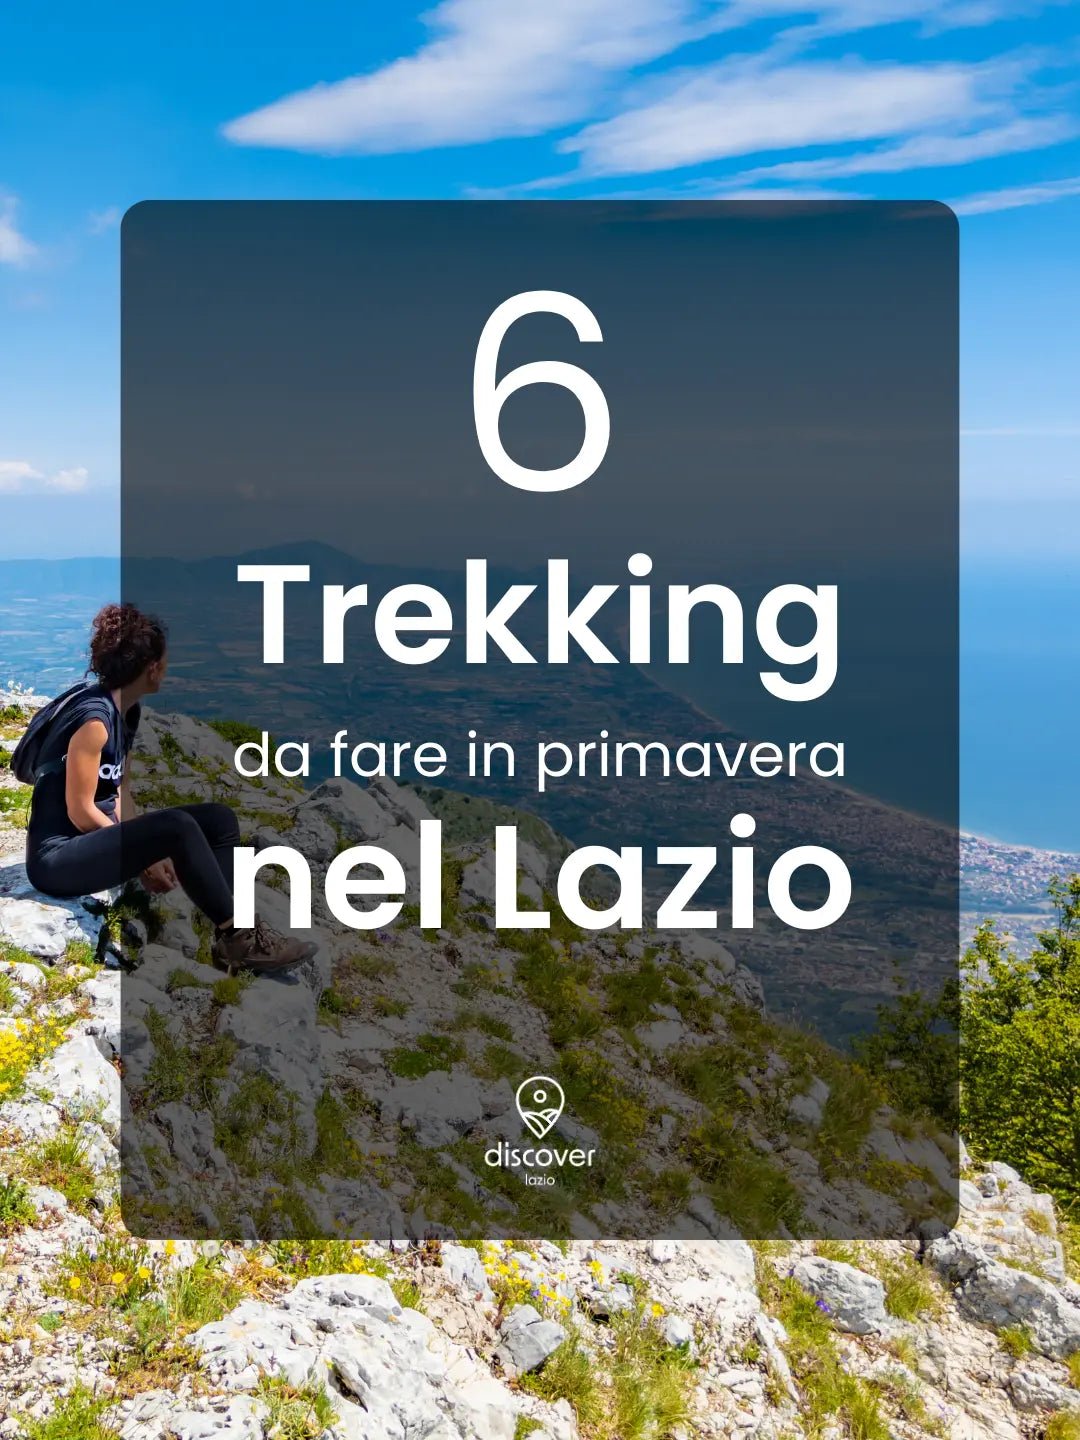 6 Trekking da fare in primavera nel Lazio - Discover Experience